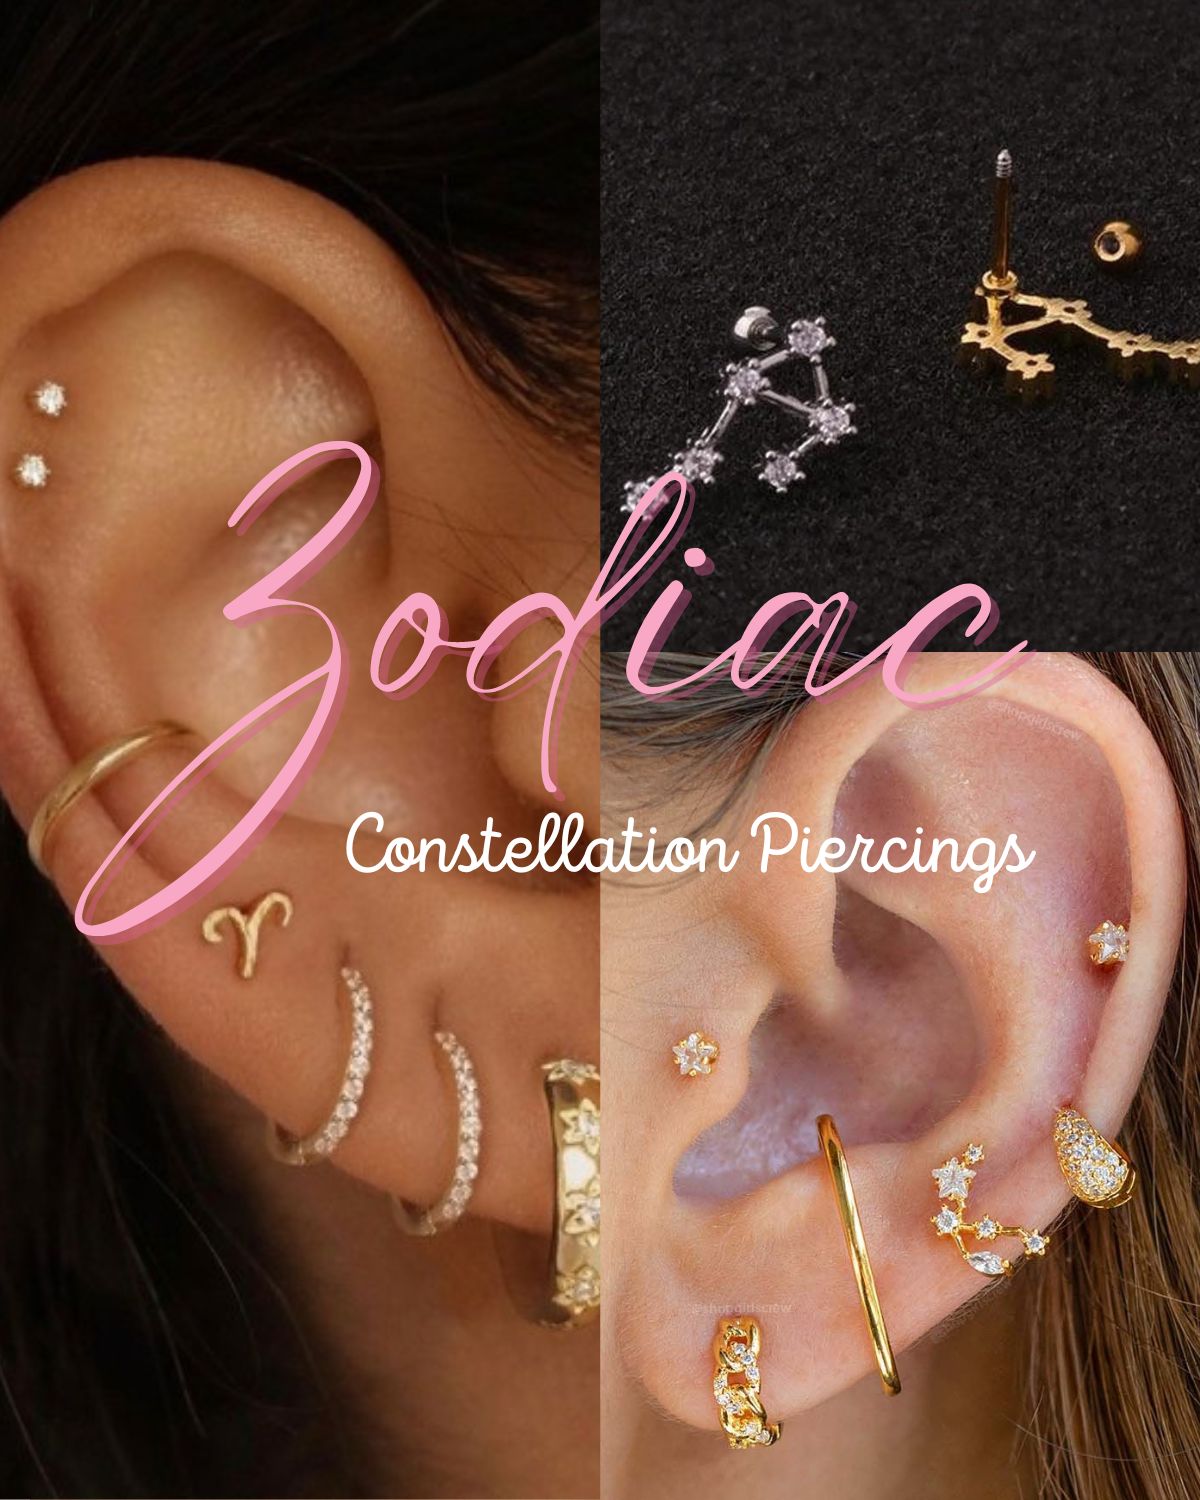 Zodiac earrings